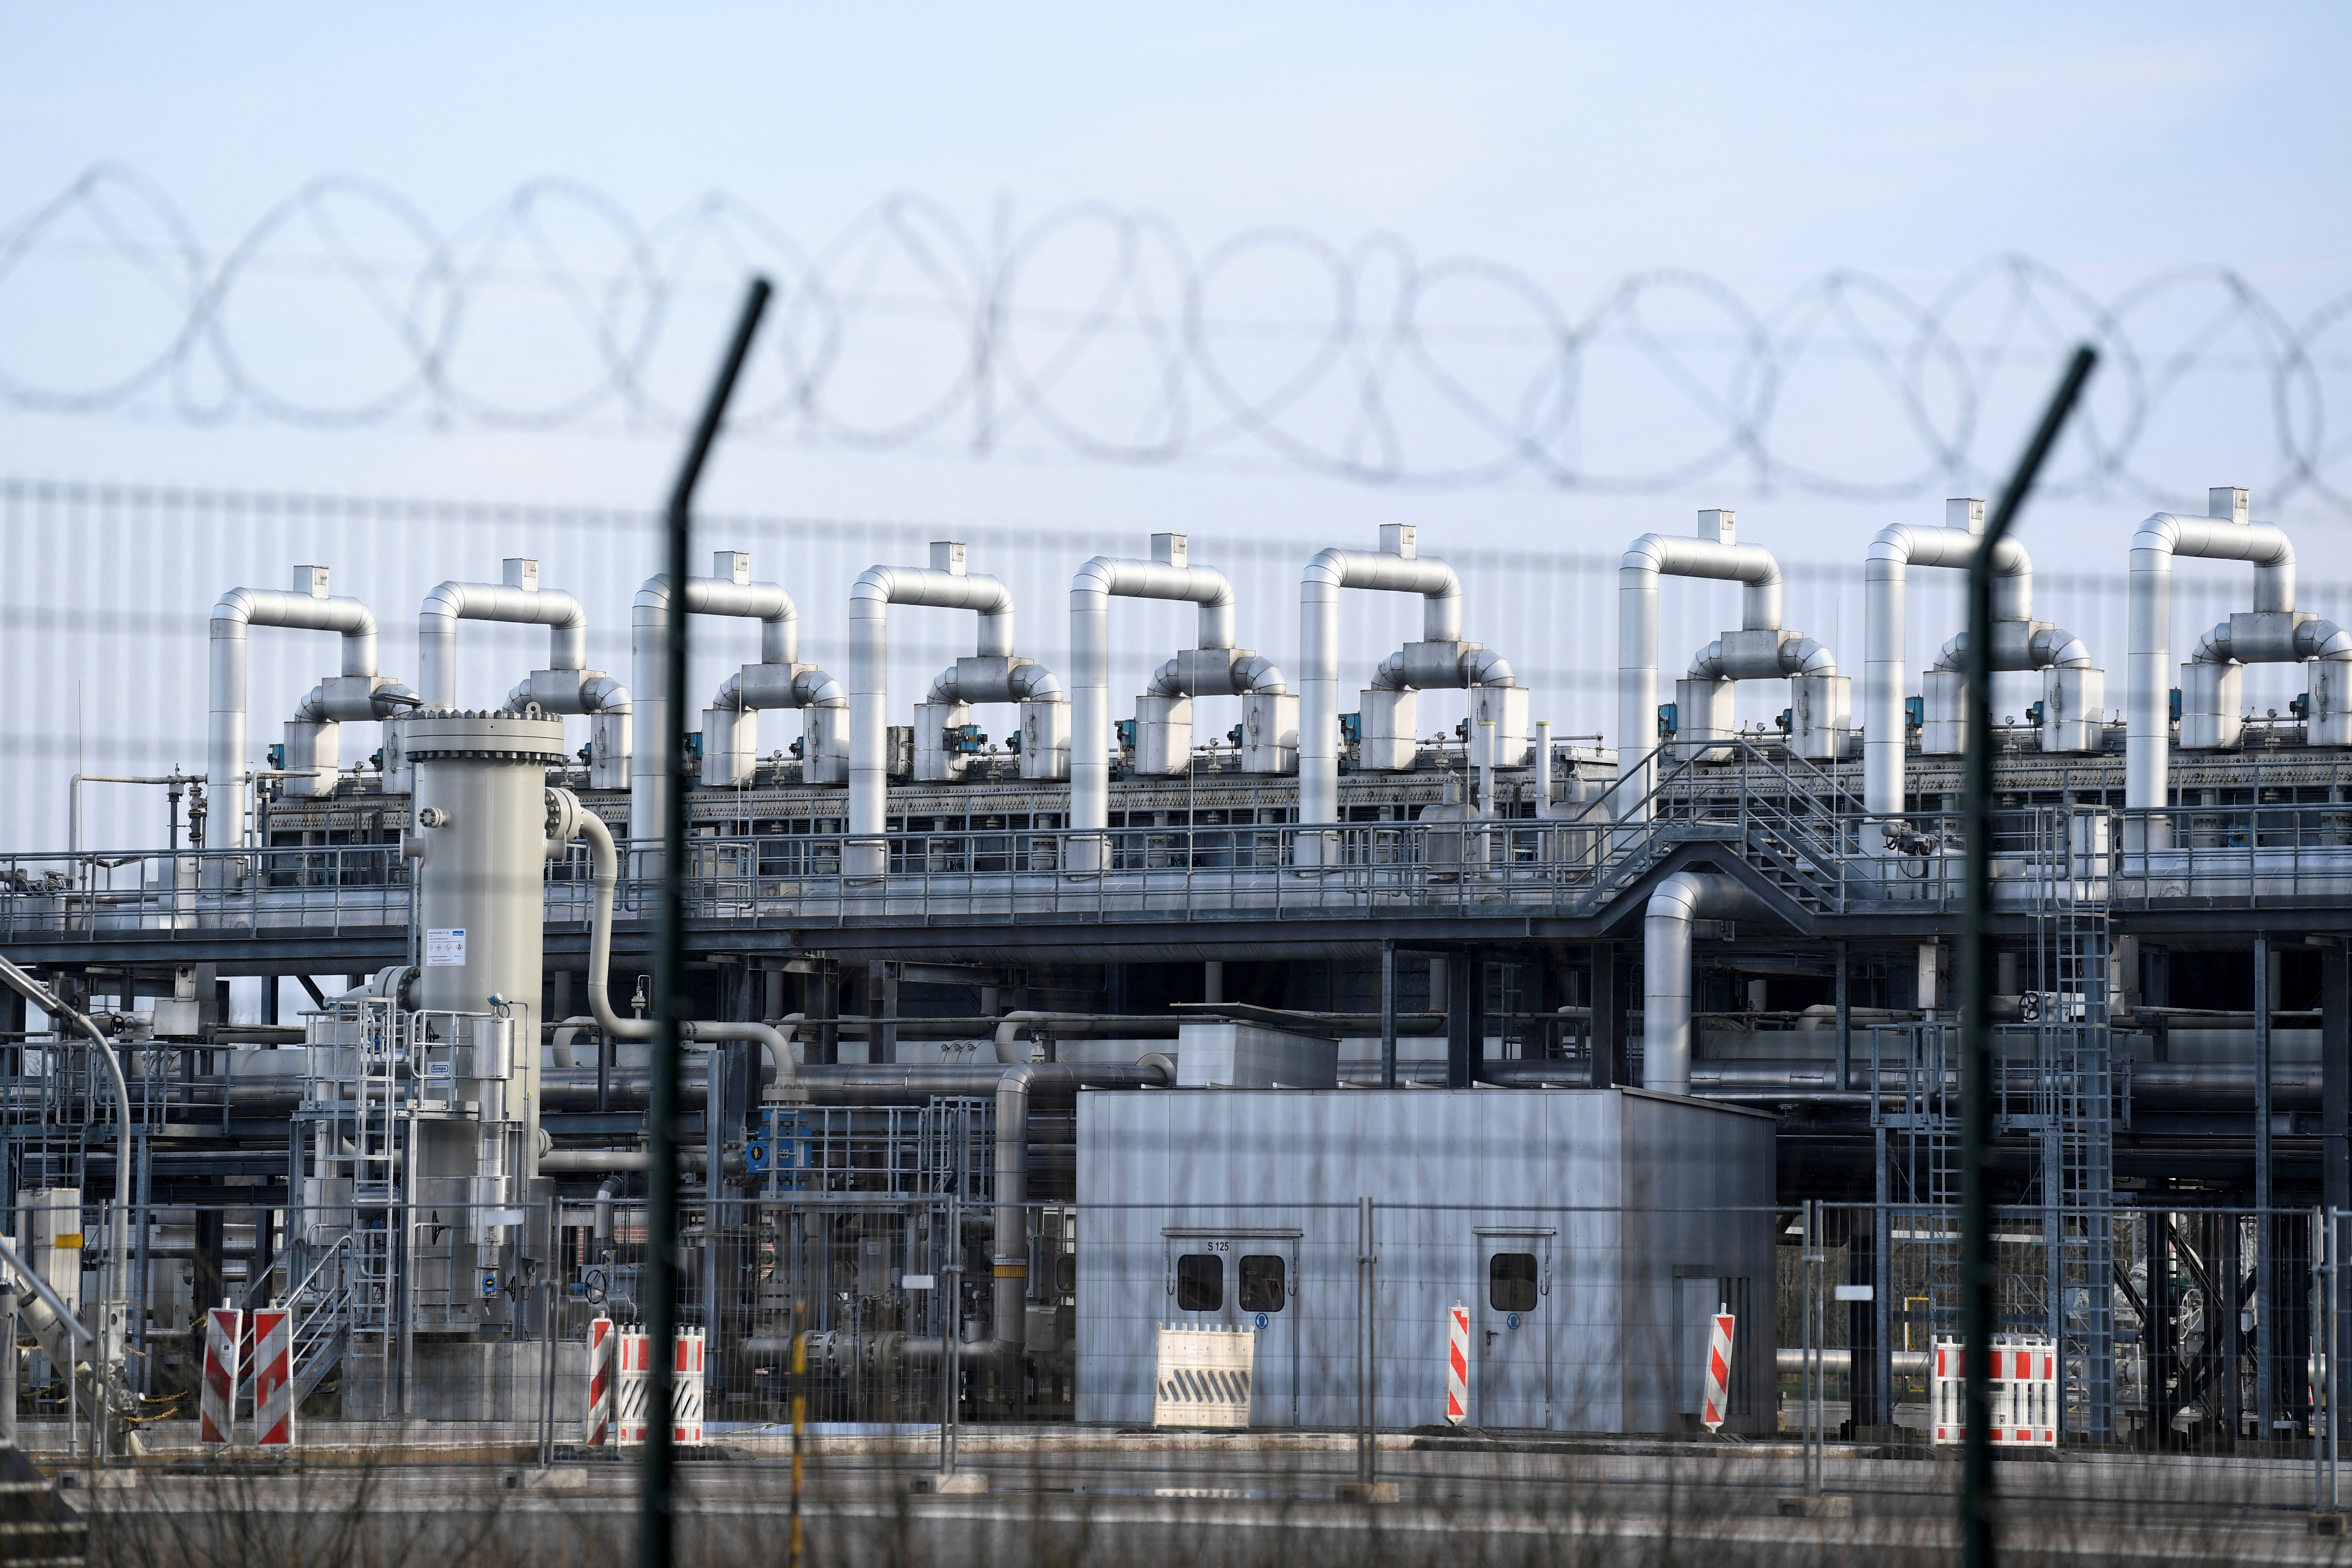 Déposito de gas natural Aspora, en Rehden, Germany (REUTERS/Fabian Bimmer/File Photo)